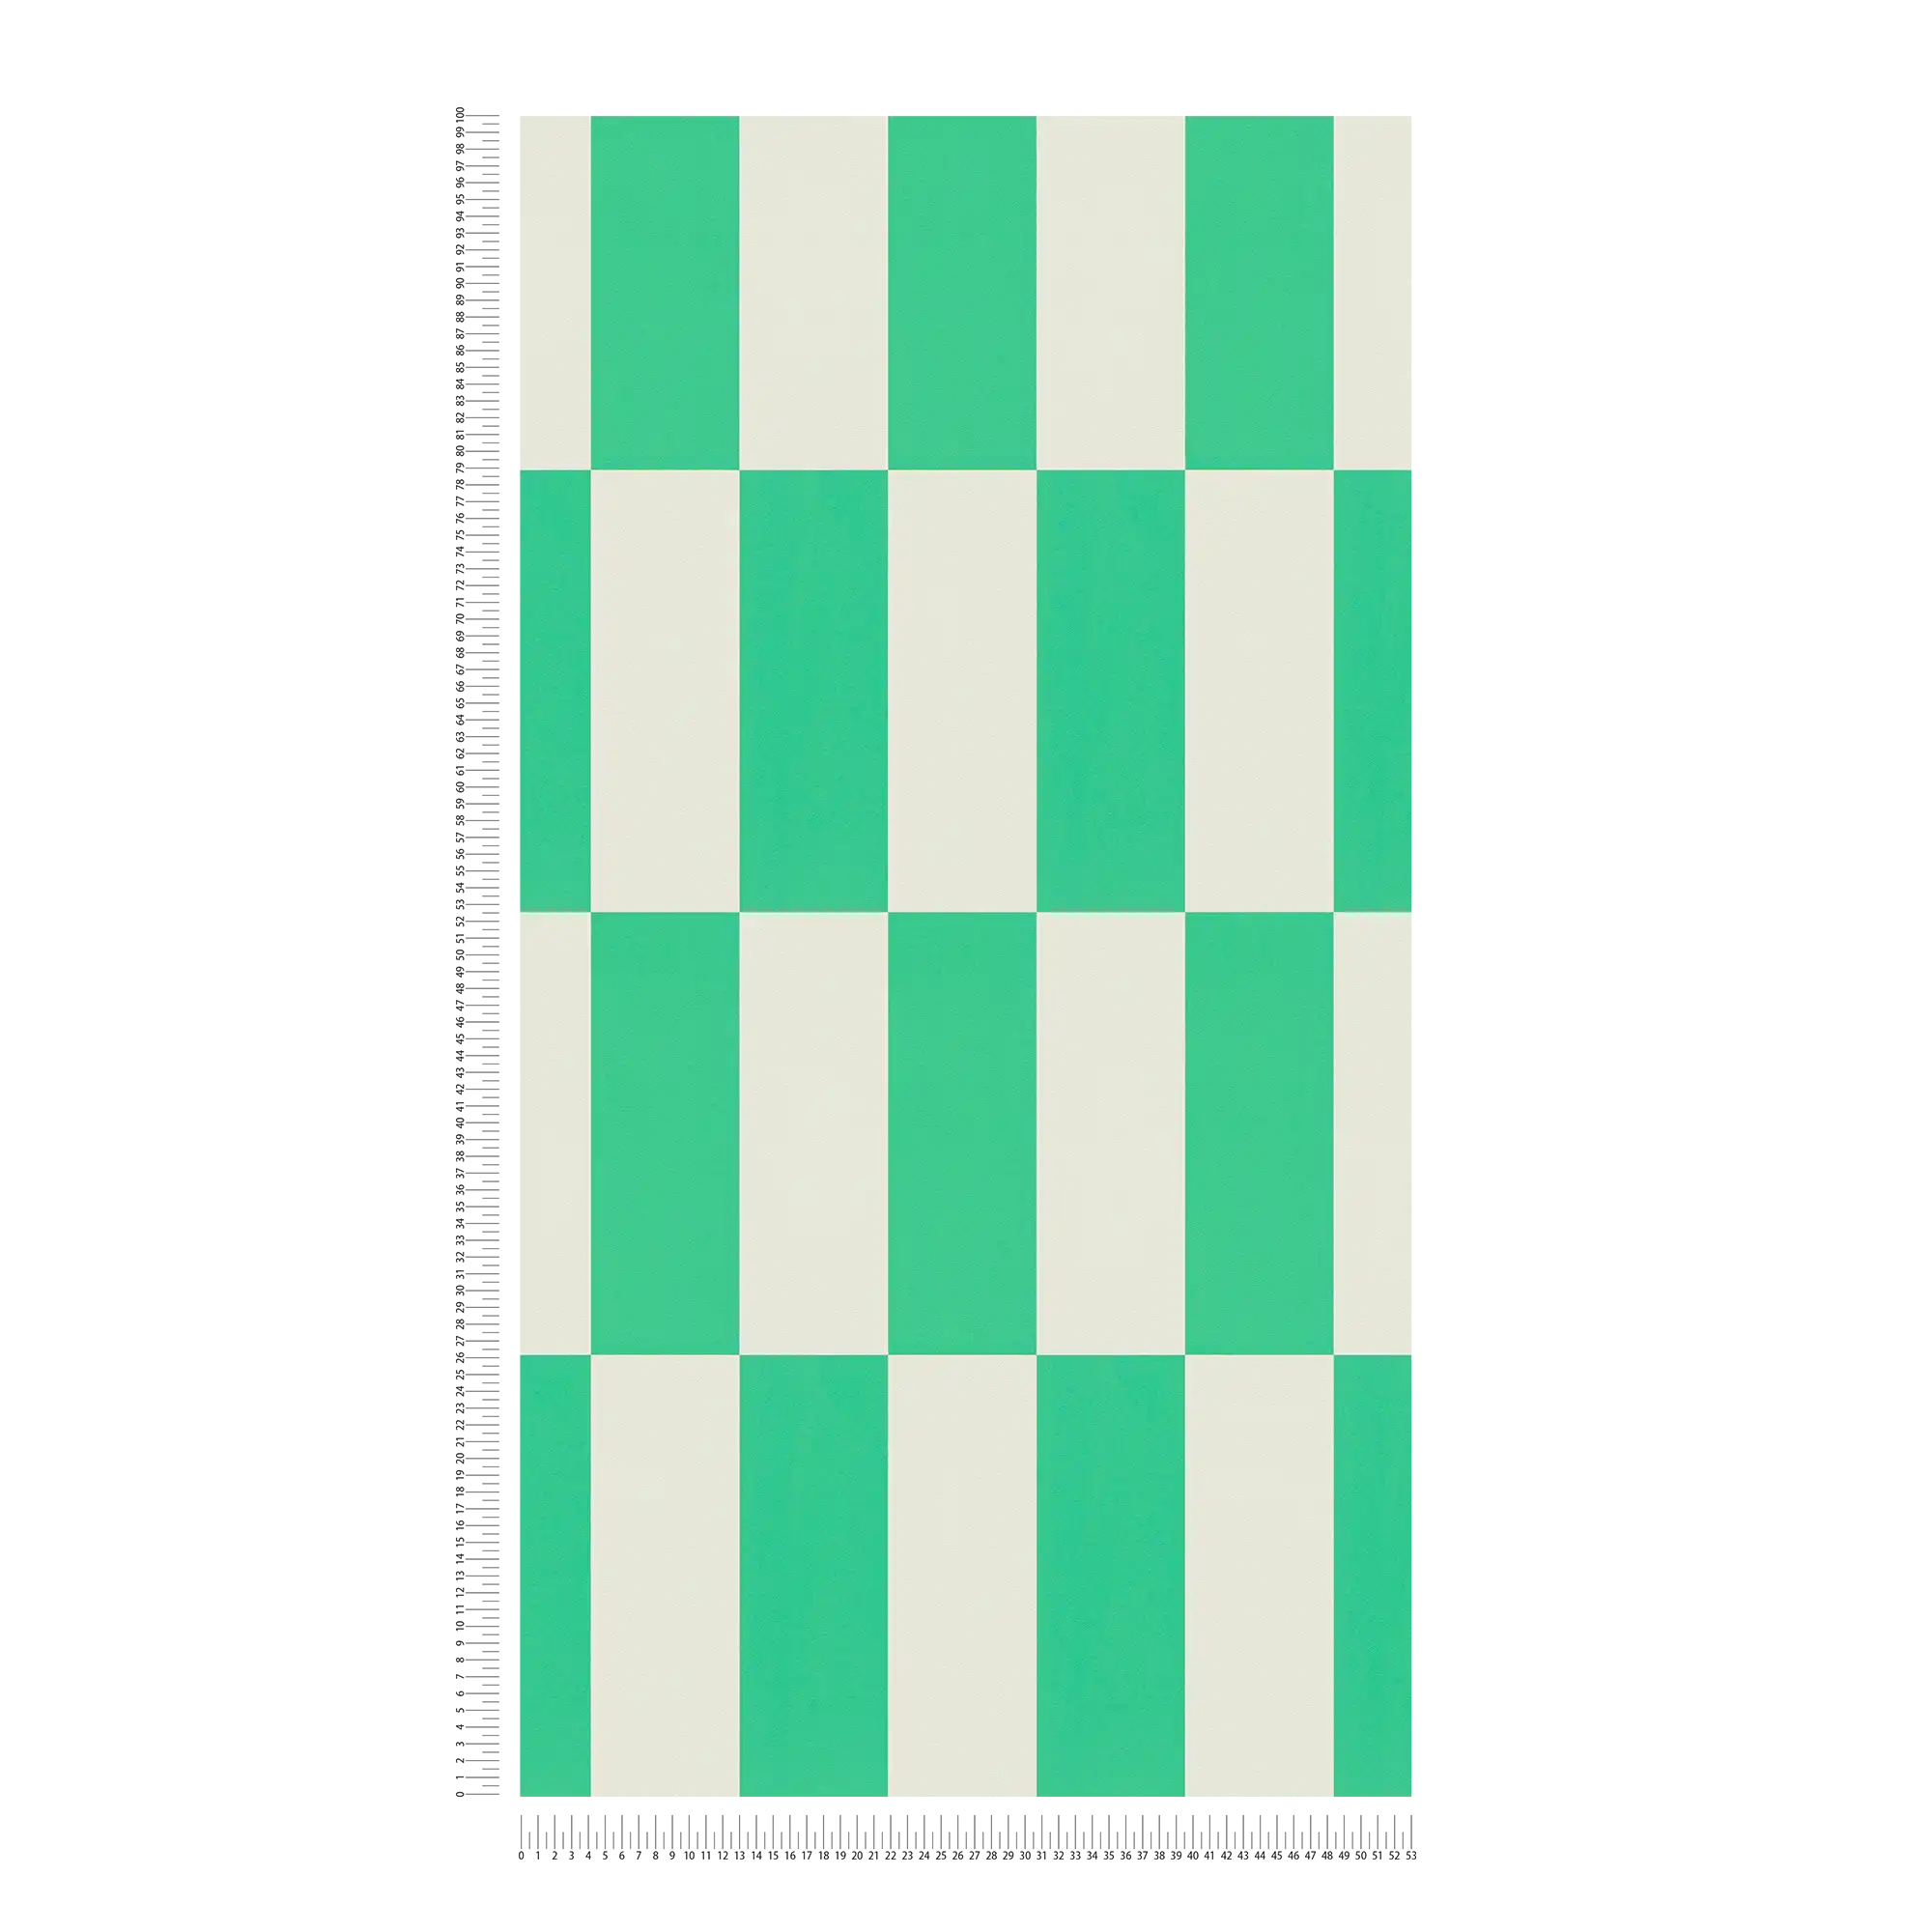             Carta da parati con motivo grafico a quadretti - verde, bianco
        